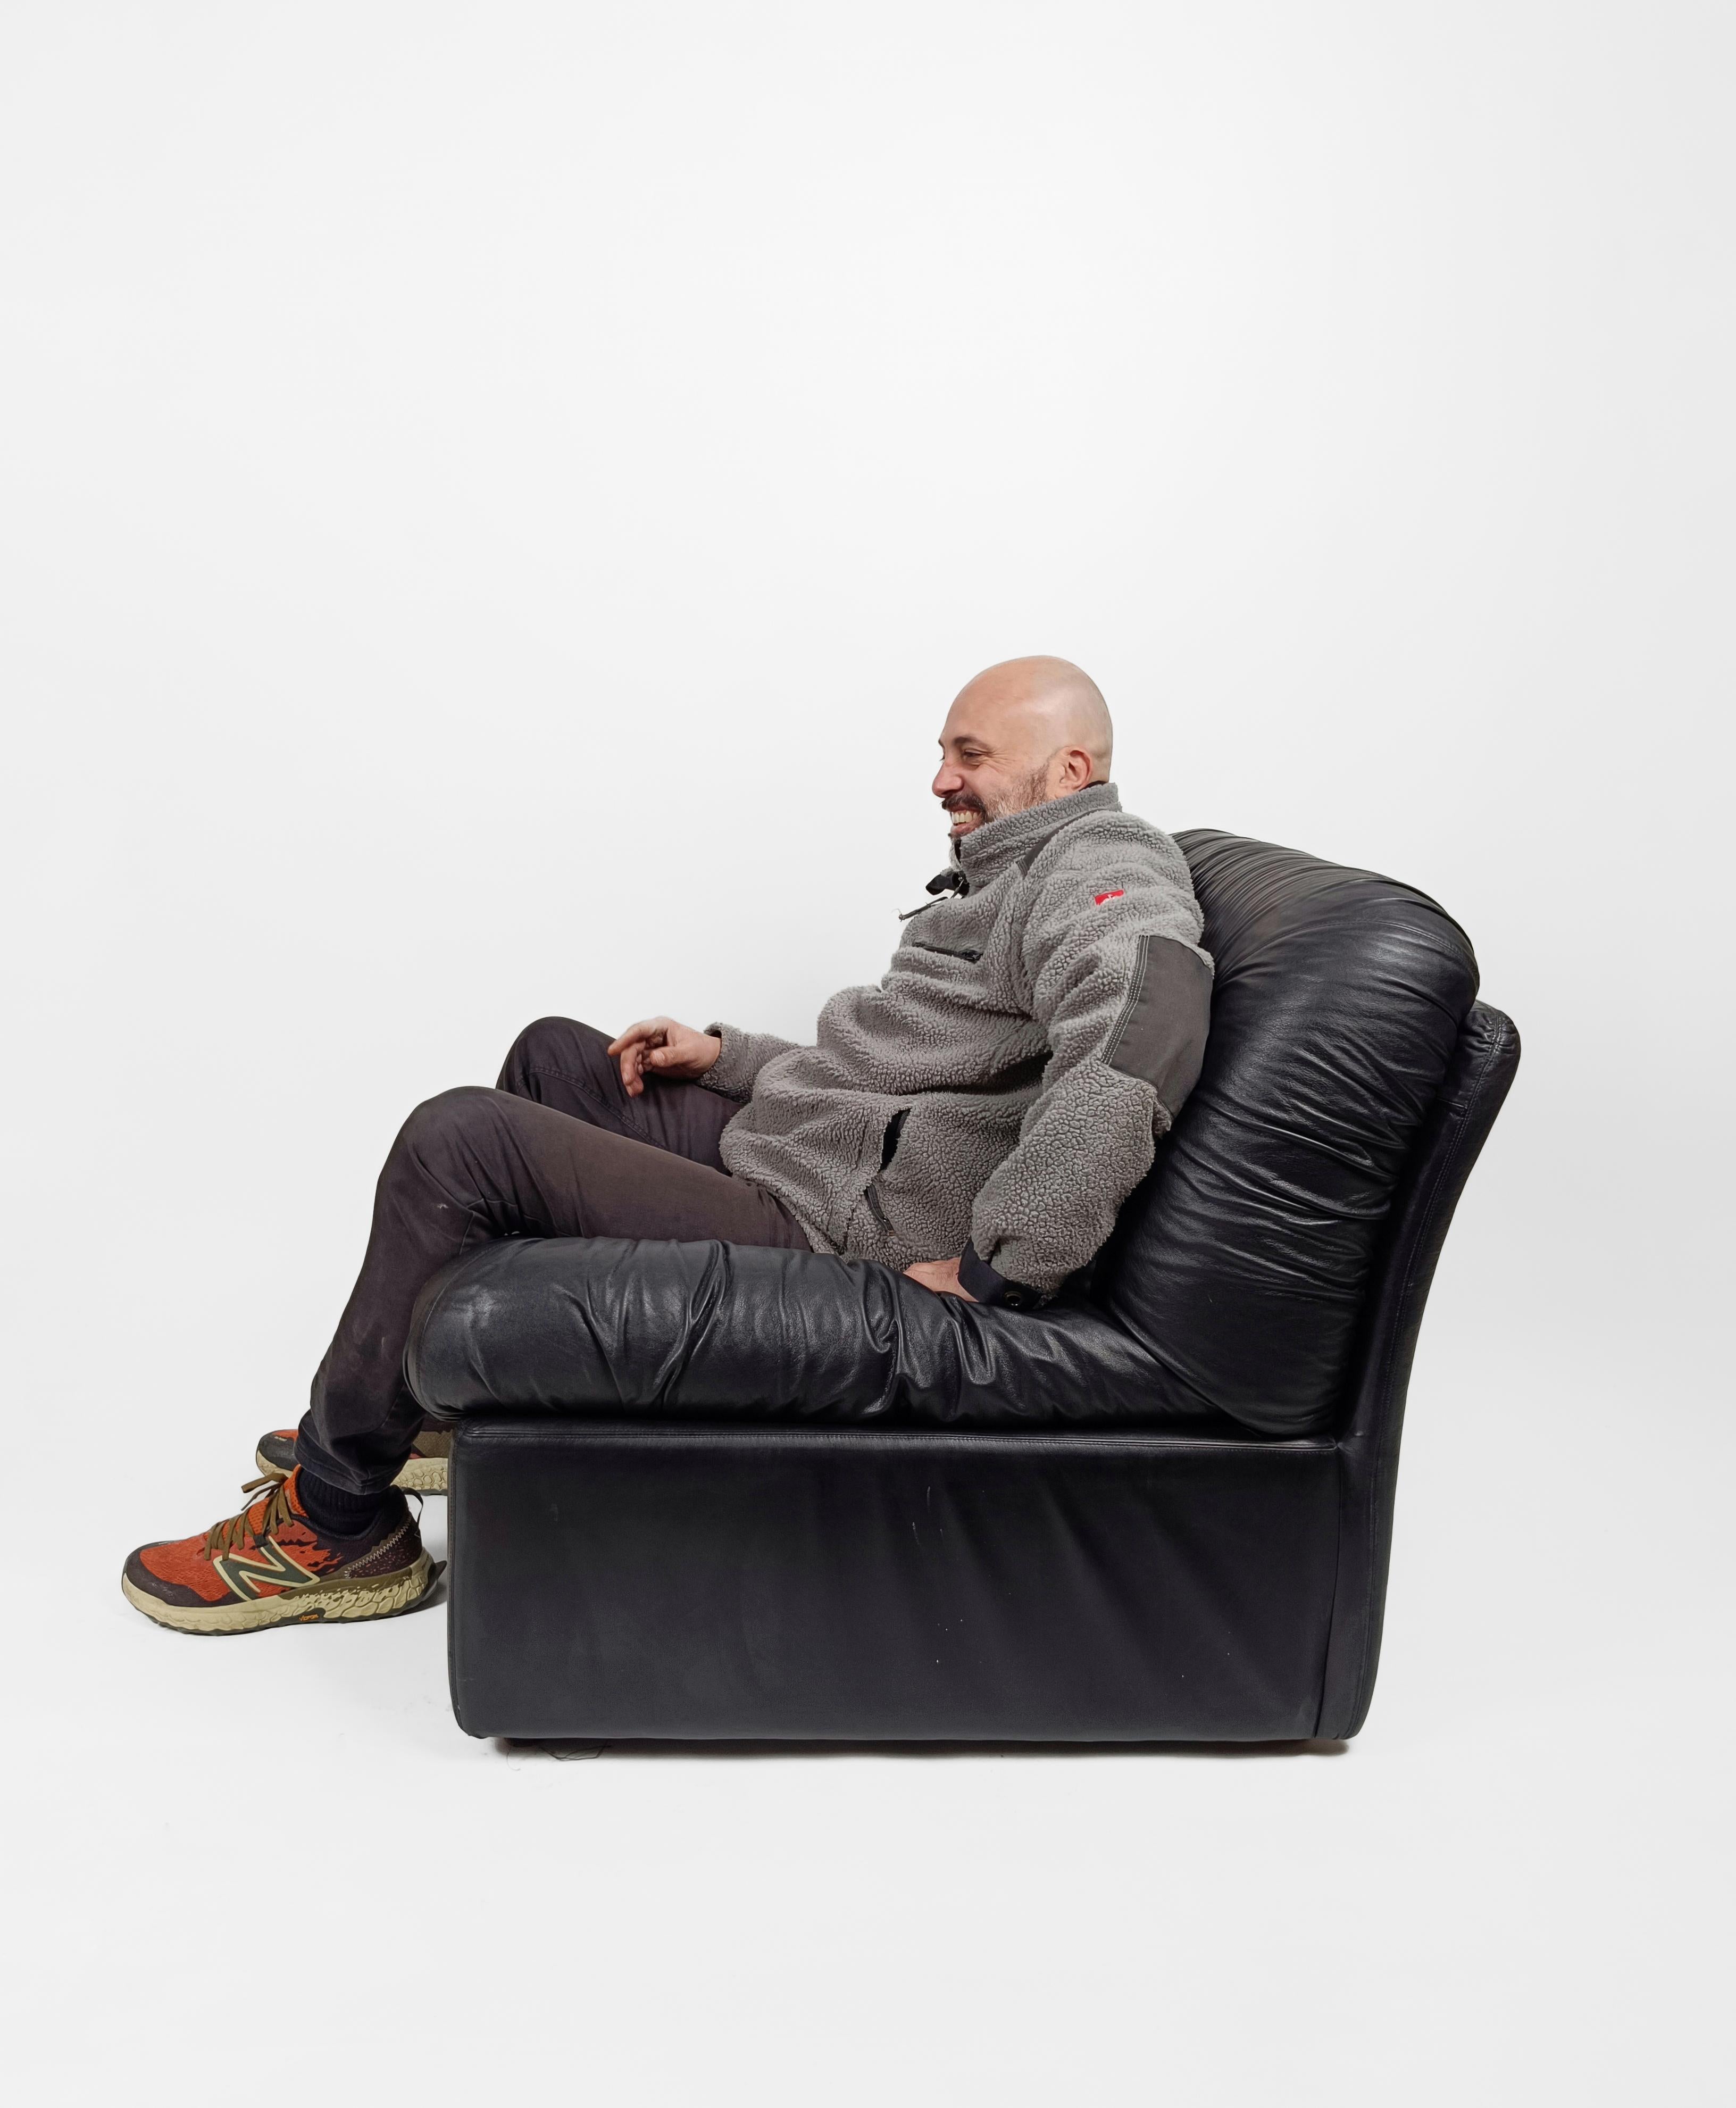 Une chaise Lounge vintage qui peut devenir un élément d'un canapé modulable à l'infini.
Fabriqué en Italie par la société LEV & LEV entre 1960 et 1970, ce fauteuil est le manifeste de cette tendance née dans les années 70, et redevenue cool, des